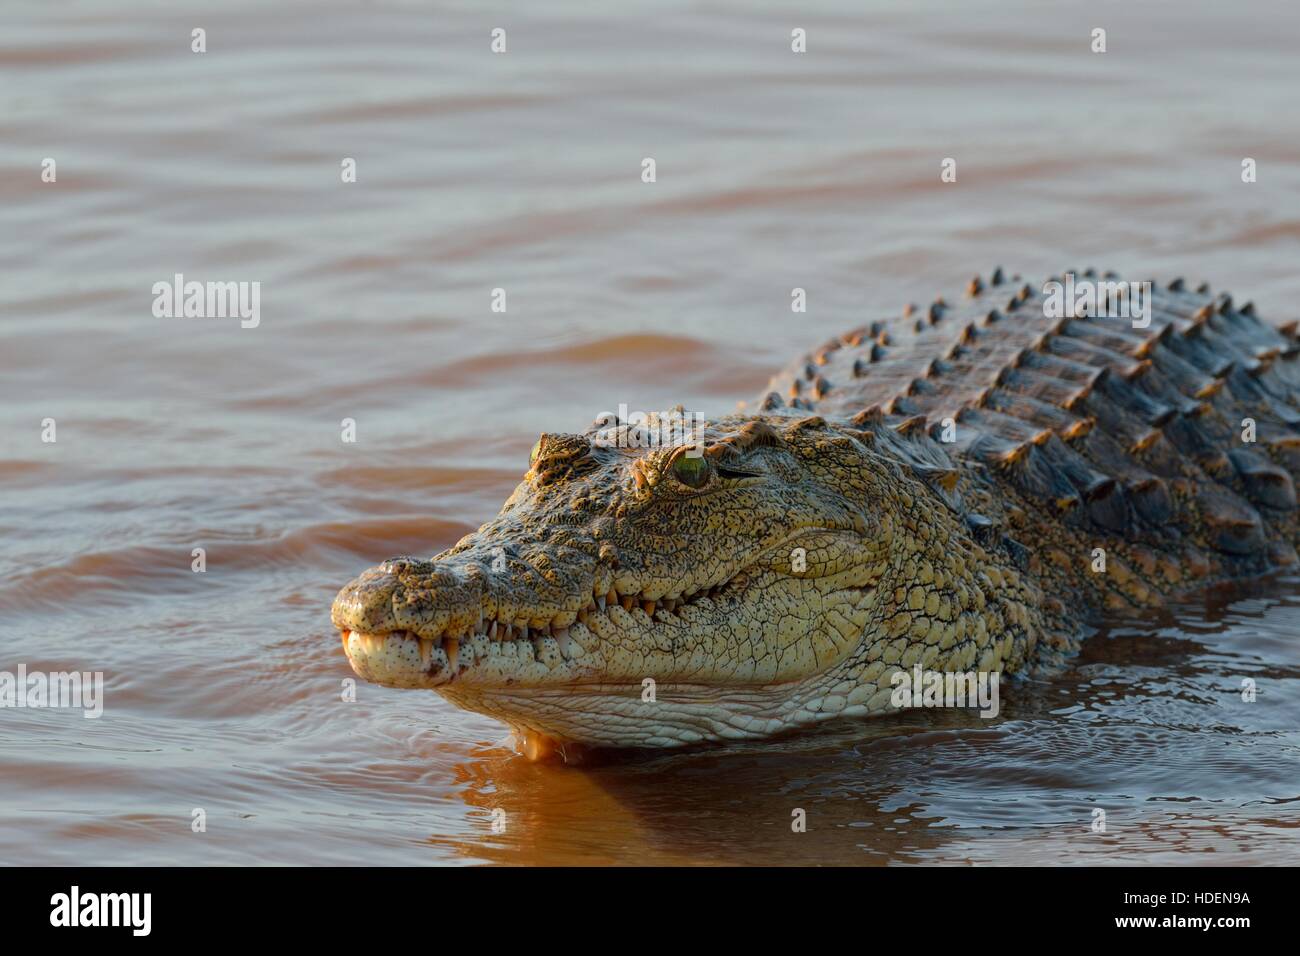 Crocodile du Nil (Crocodylus niloticus), croc revenant à l'eau, satié, barrage de Sunset, Parc national Kruger, Afrique du Sud, Afrique Banque D'Images